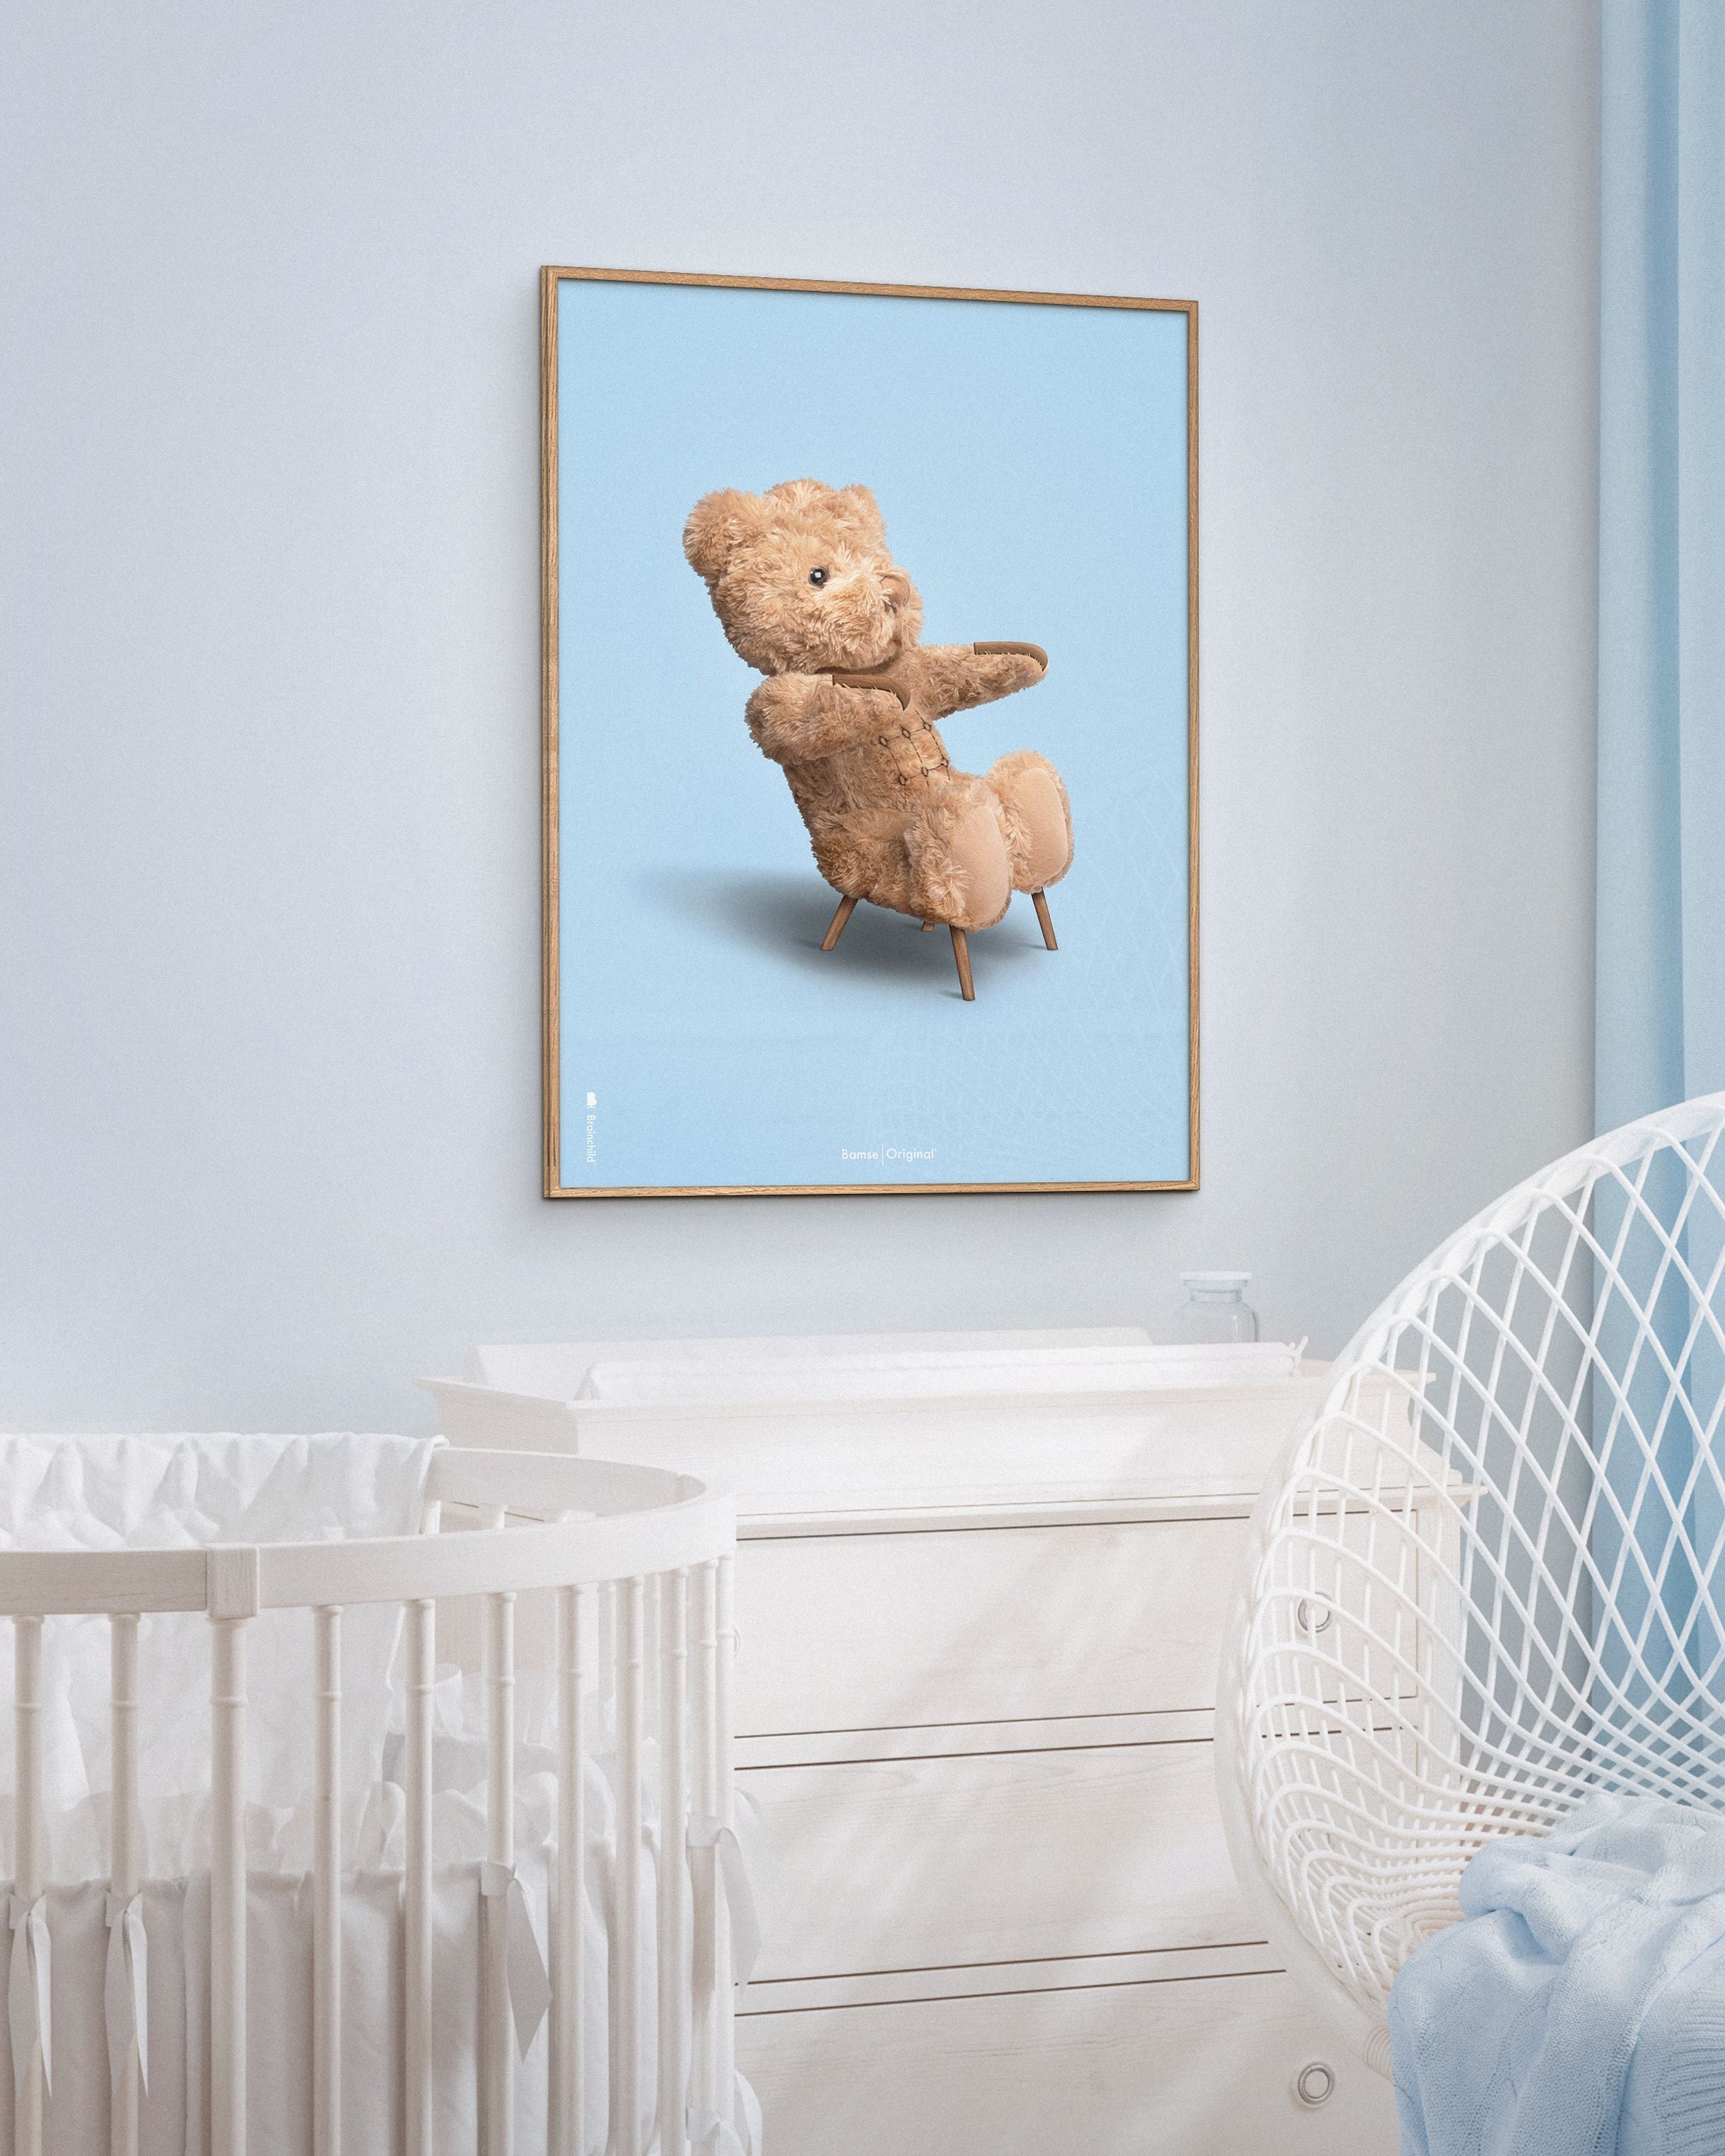 Brainchild Cadre d'affiches classique d'ours en peluche en bois foncé Ram 30x40 cm, fond bleu clair